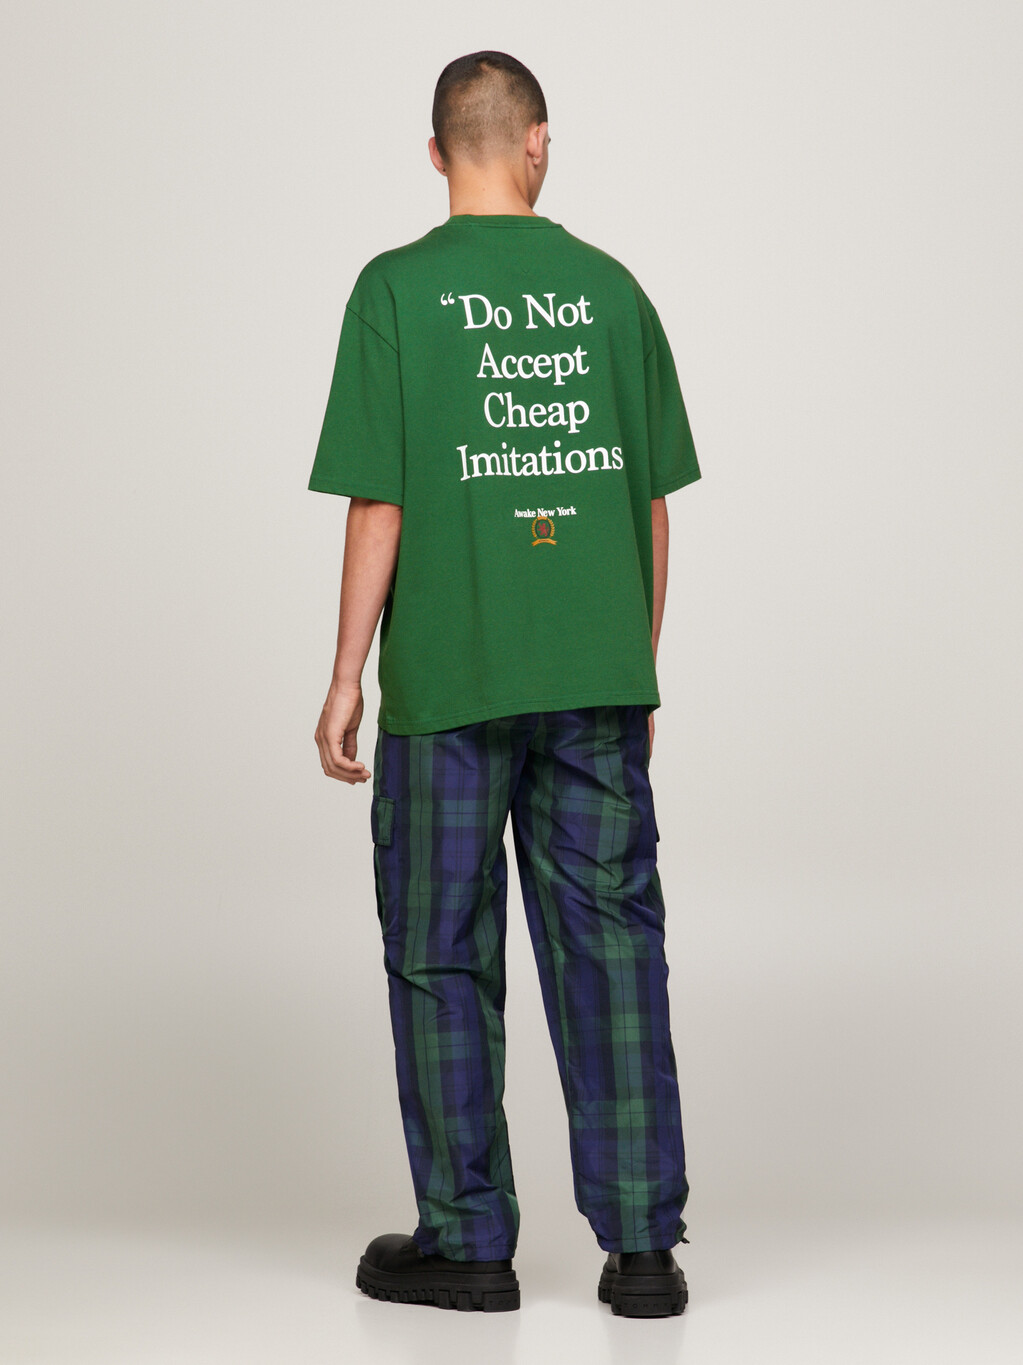 Tommy X Awake NY Back Slogan Relaxed T-Shirt, Aviator Green, hi-res